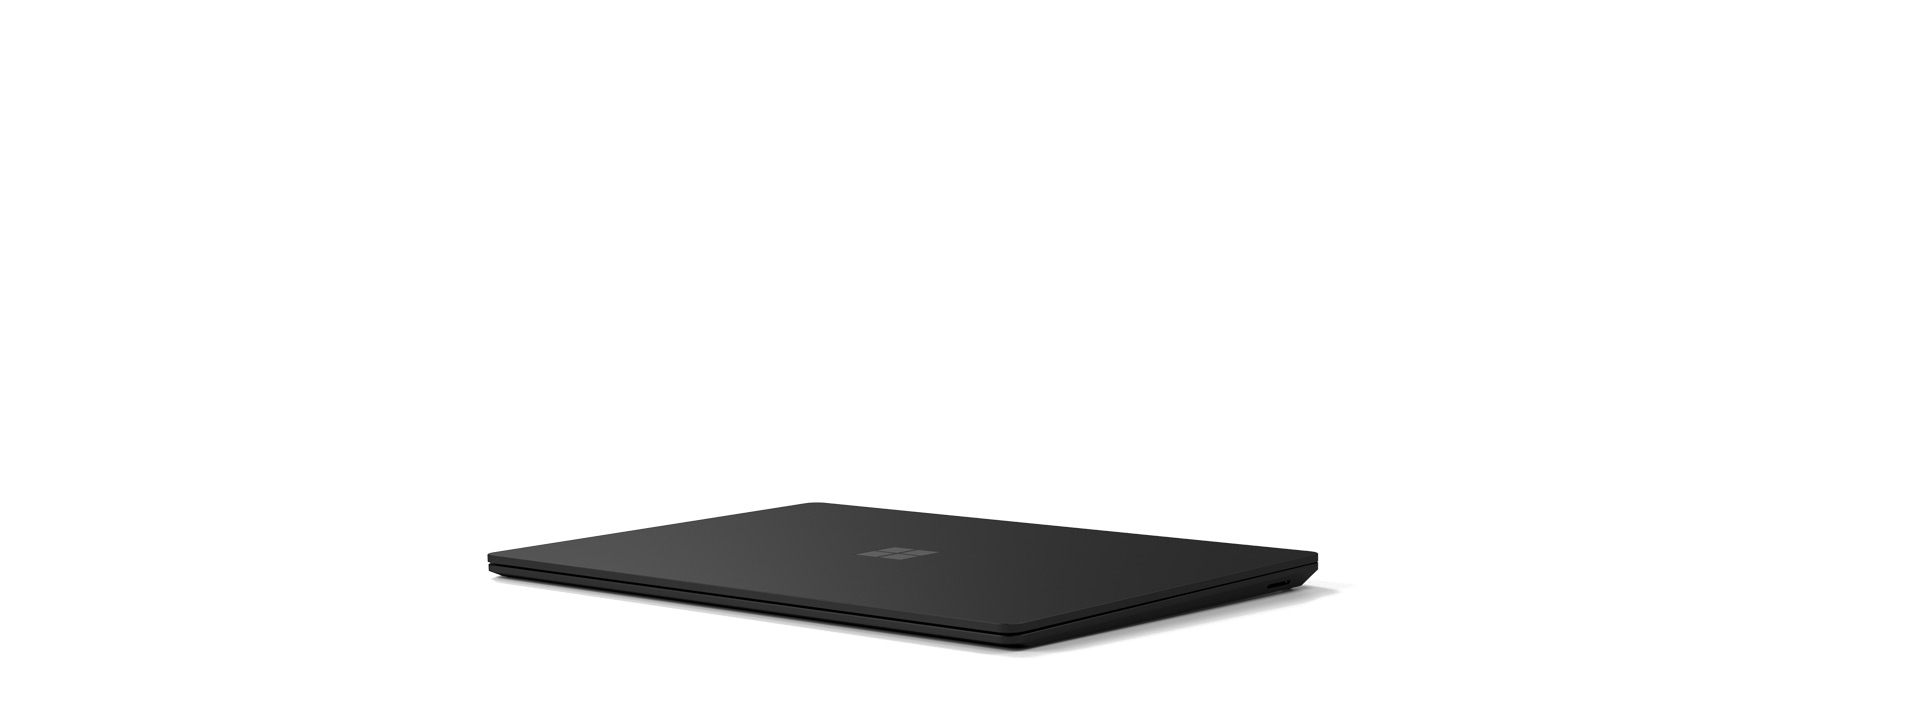 Un Surface Laptop 4 est présenté en position fermée.